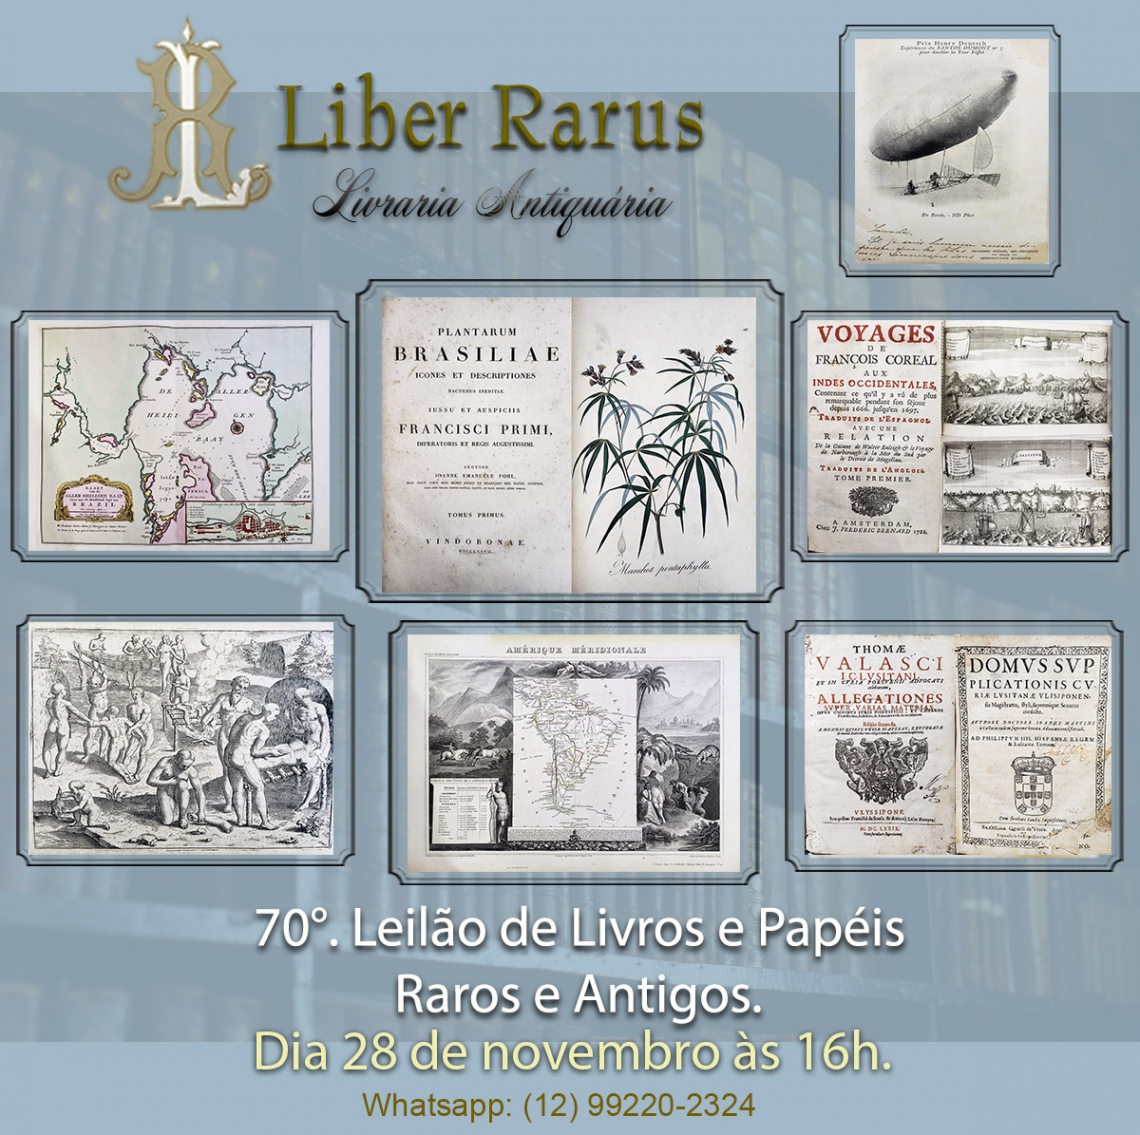 70º Leilão de Livros e Papéis Raros e Antigos - Liber Rarus